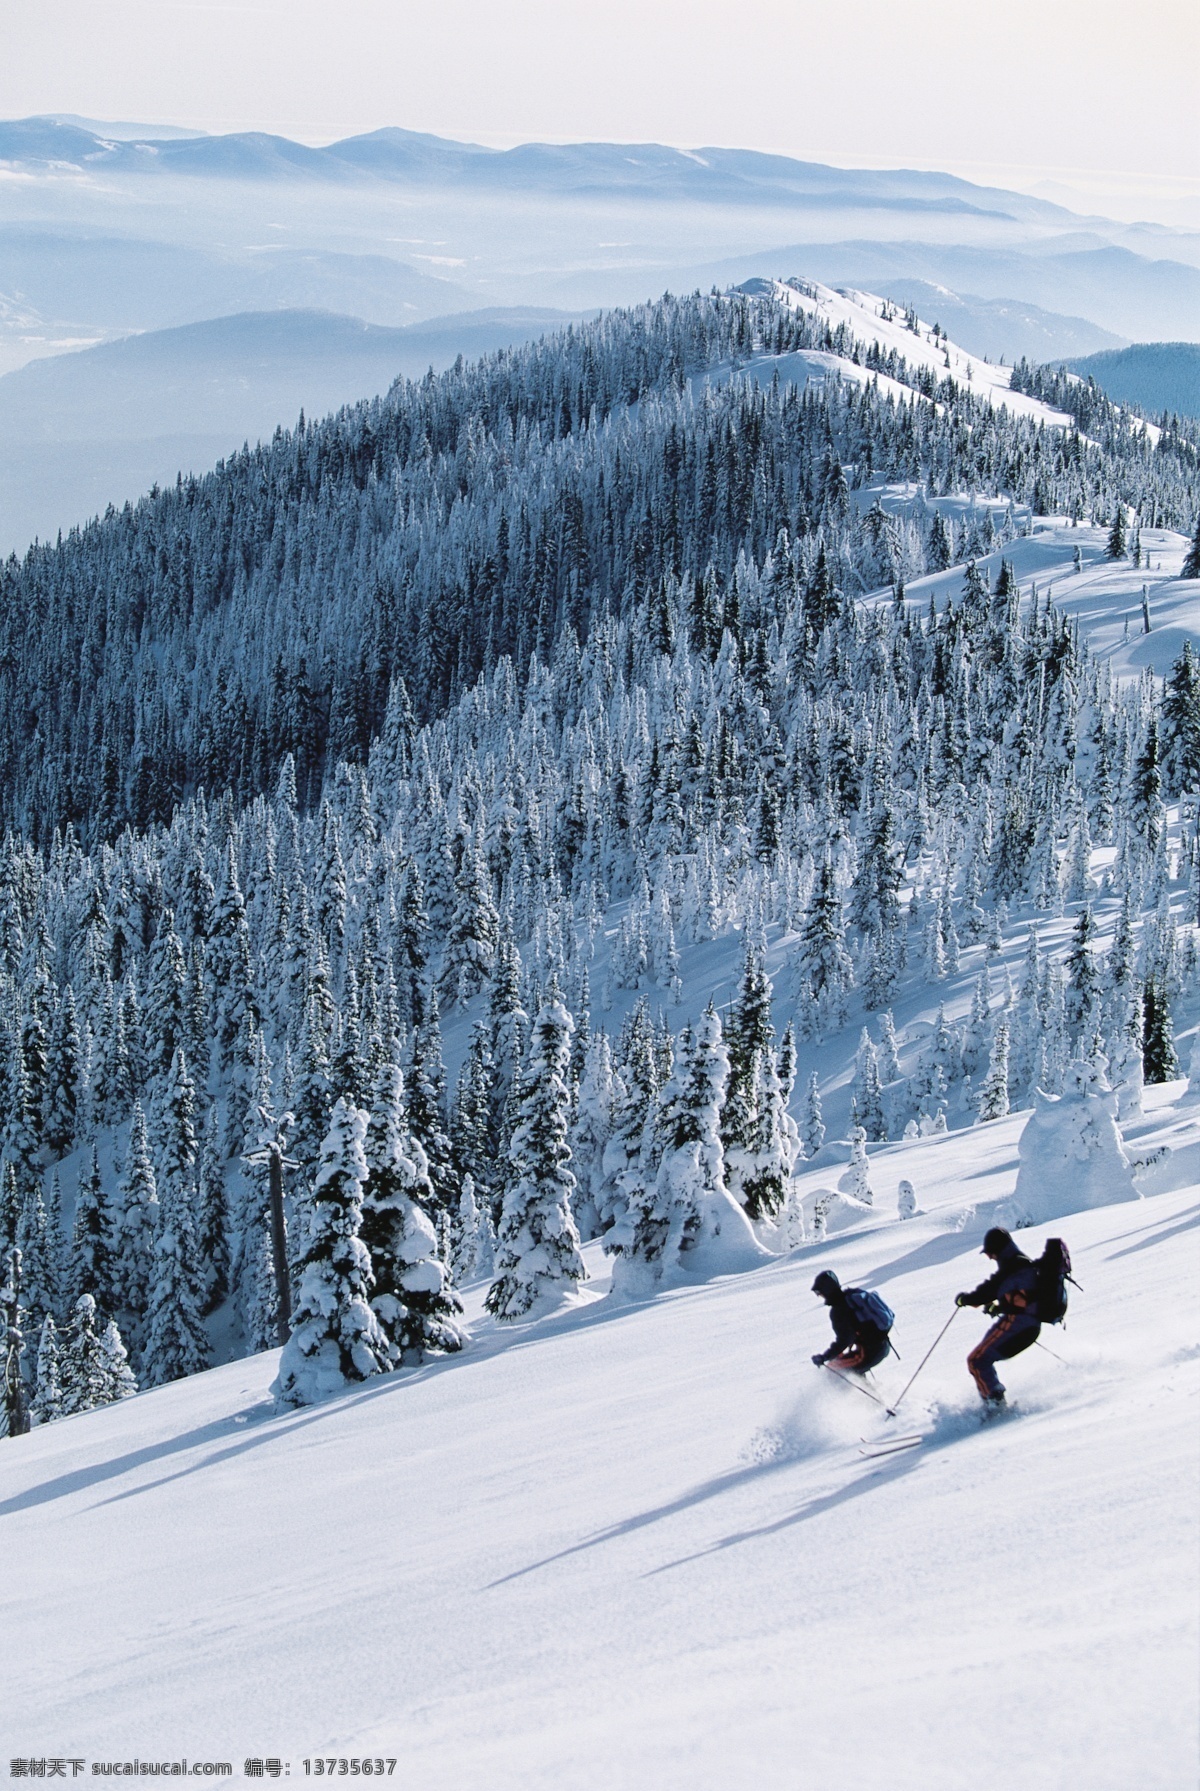 高山 滑雪 运动员 雪地运动 划雪运动 极限运动 体育项目 下滑 速度 运动图片 生活百科 雪山 风景 摄影图片 高清图片 滑雪图片